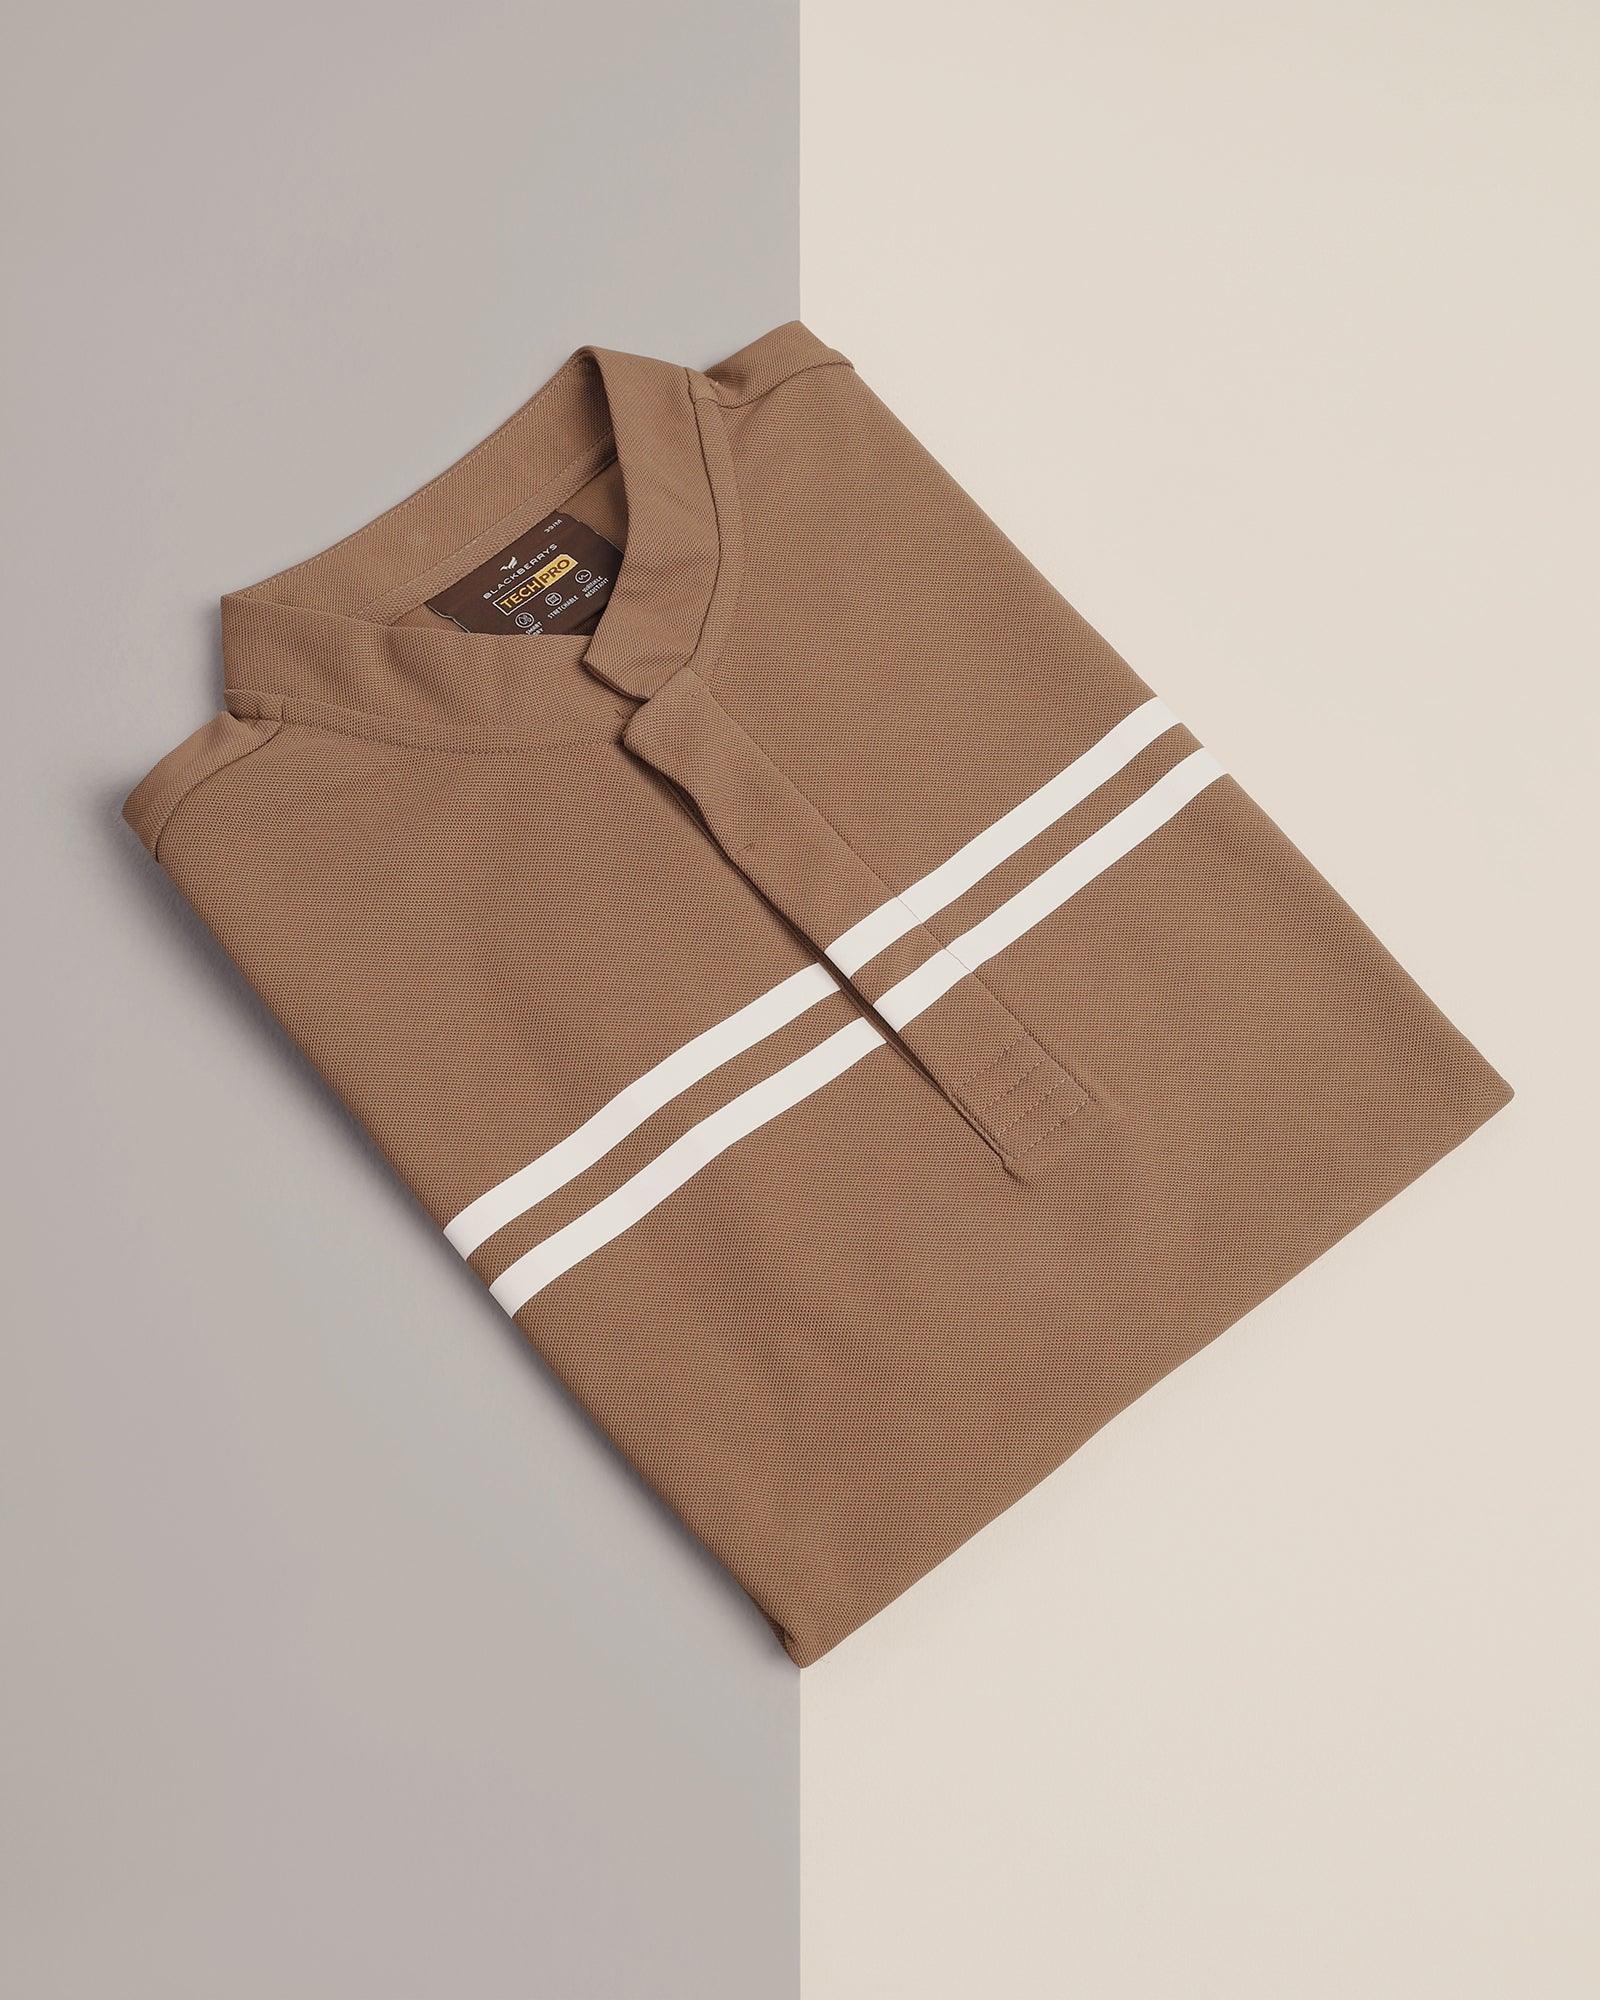 TechPro Polo Brown Stripe T-Shirt - Saylor